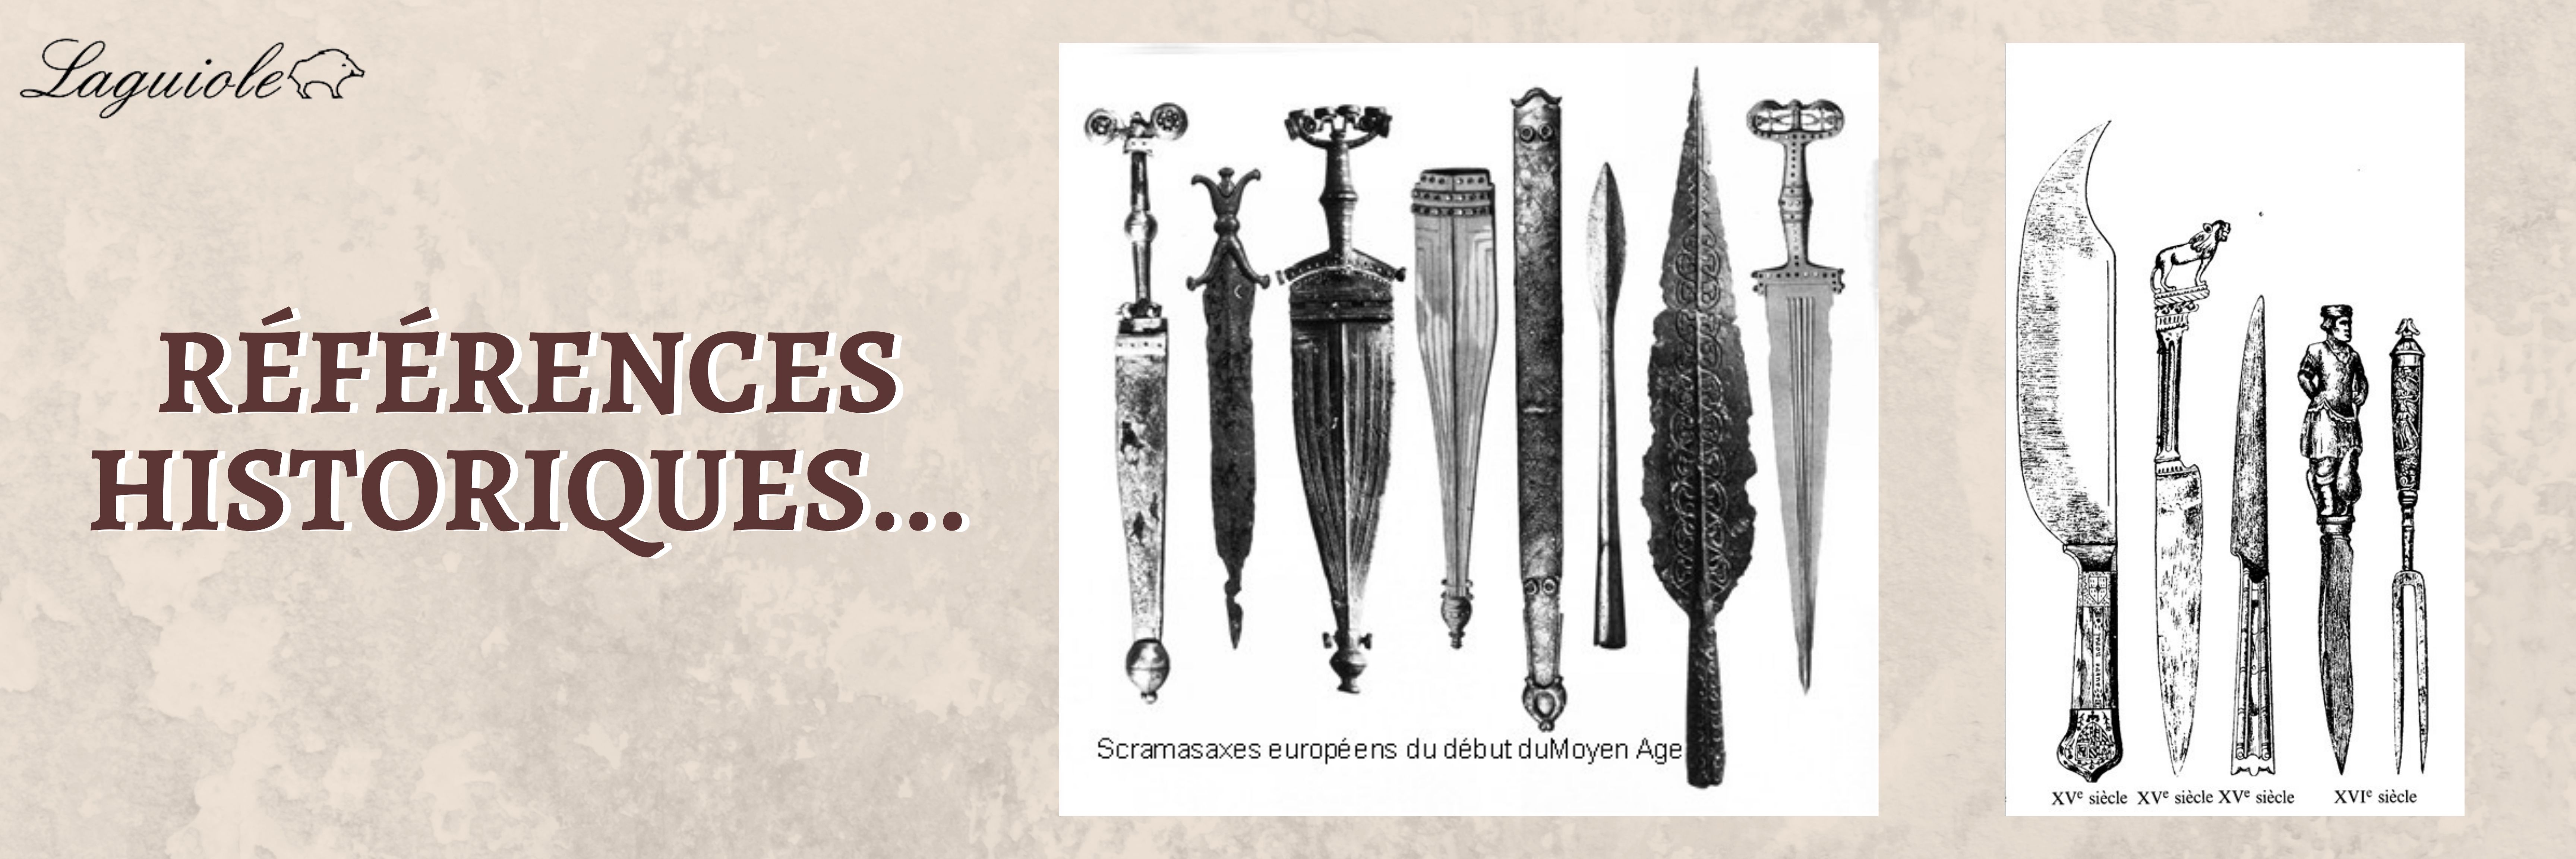 histoire des couteaux fabrication manuelle